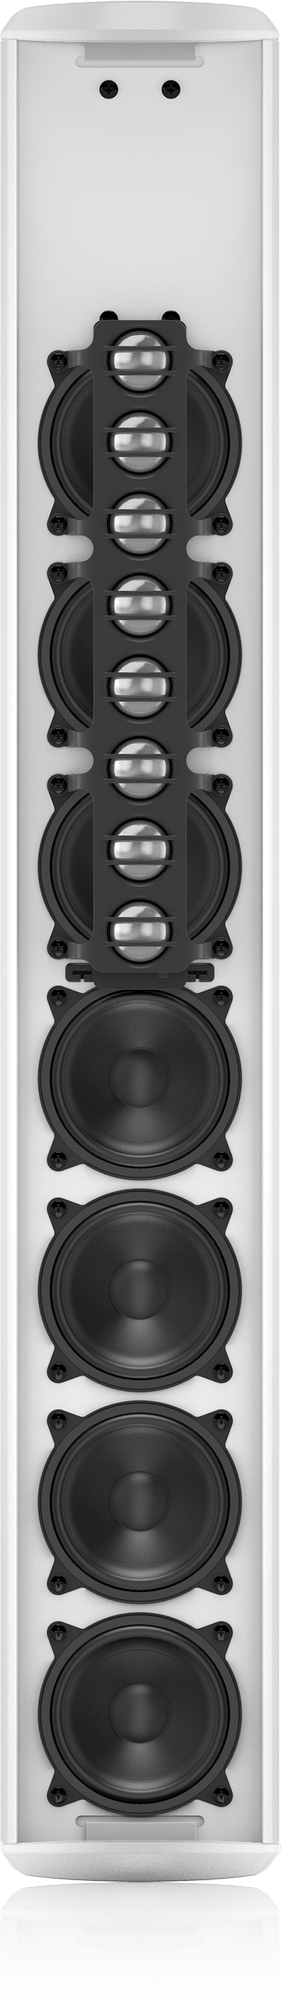 VLS15-WH Column Speaker Passive 15 Drivers White